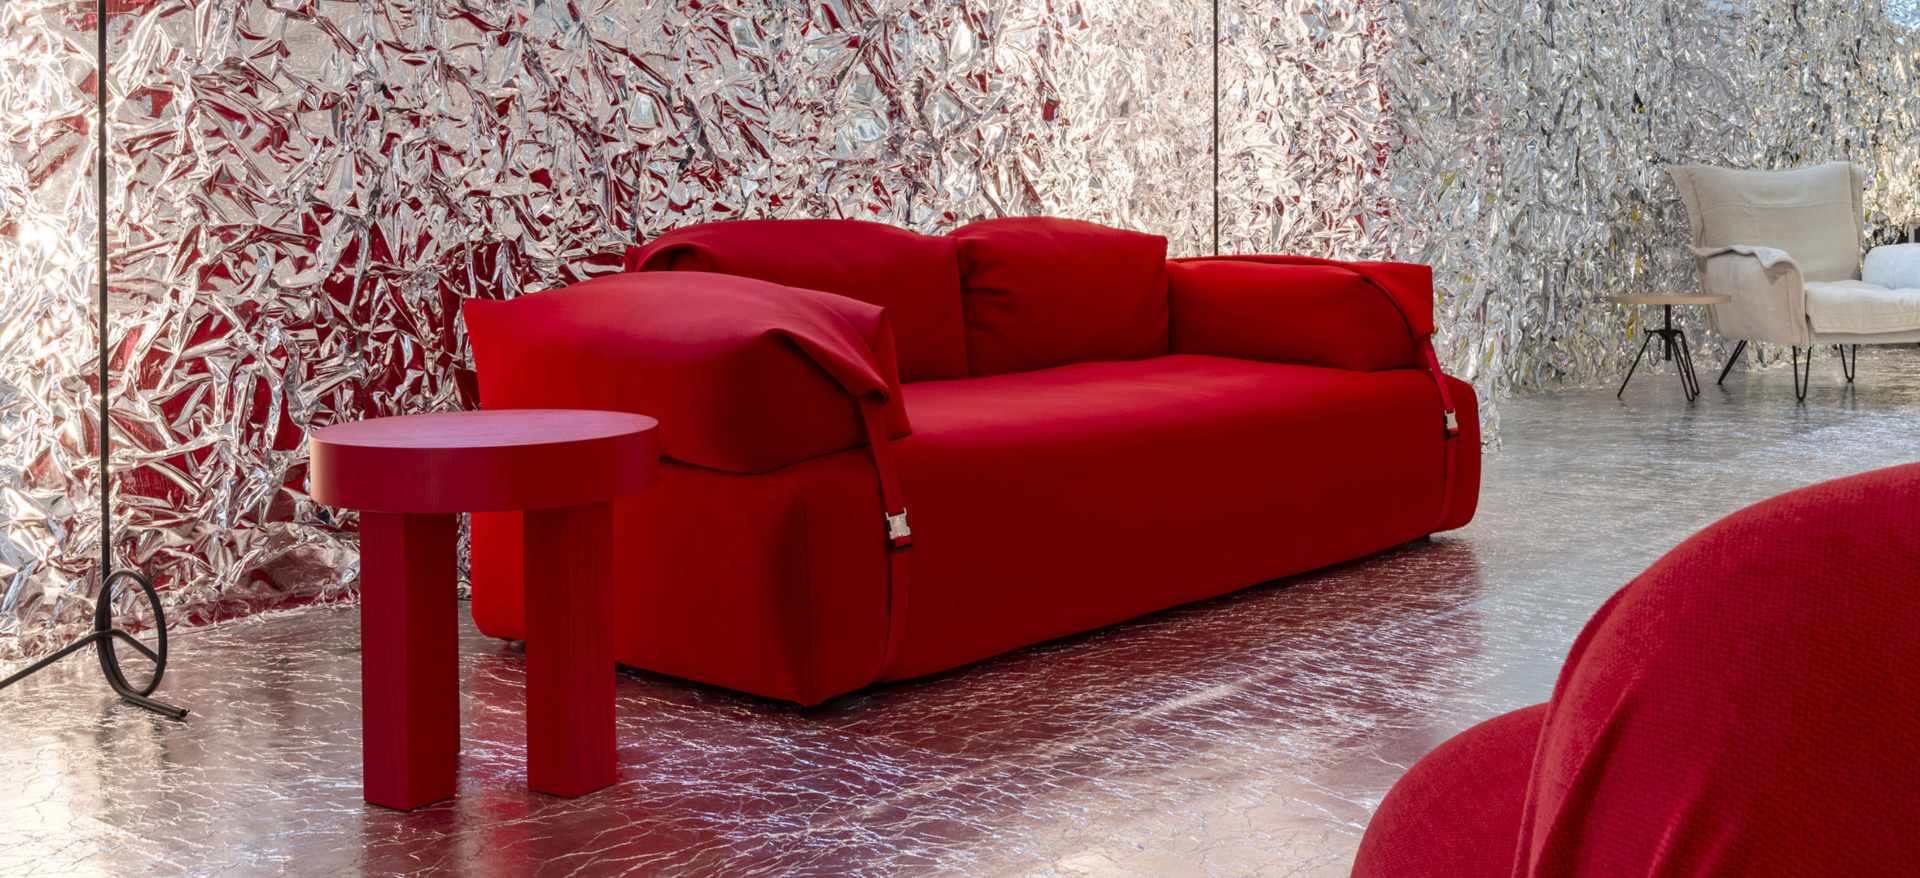 Coleção Moroso, em parceria com a Diesel, para a Semana de Design de Milão. Destaque para o sofá vermelho